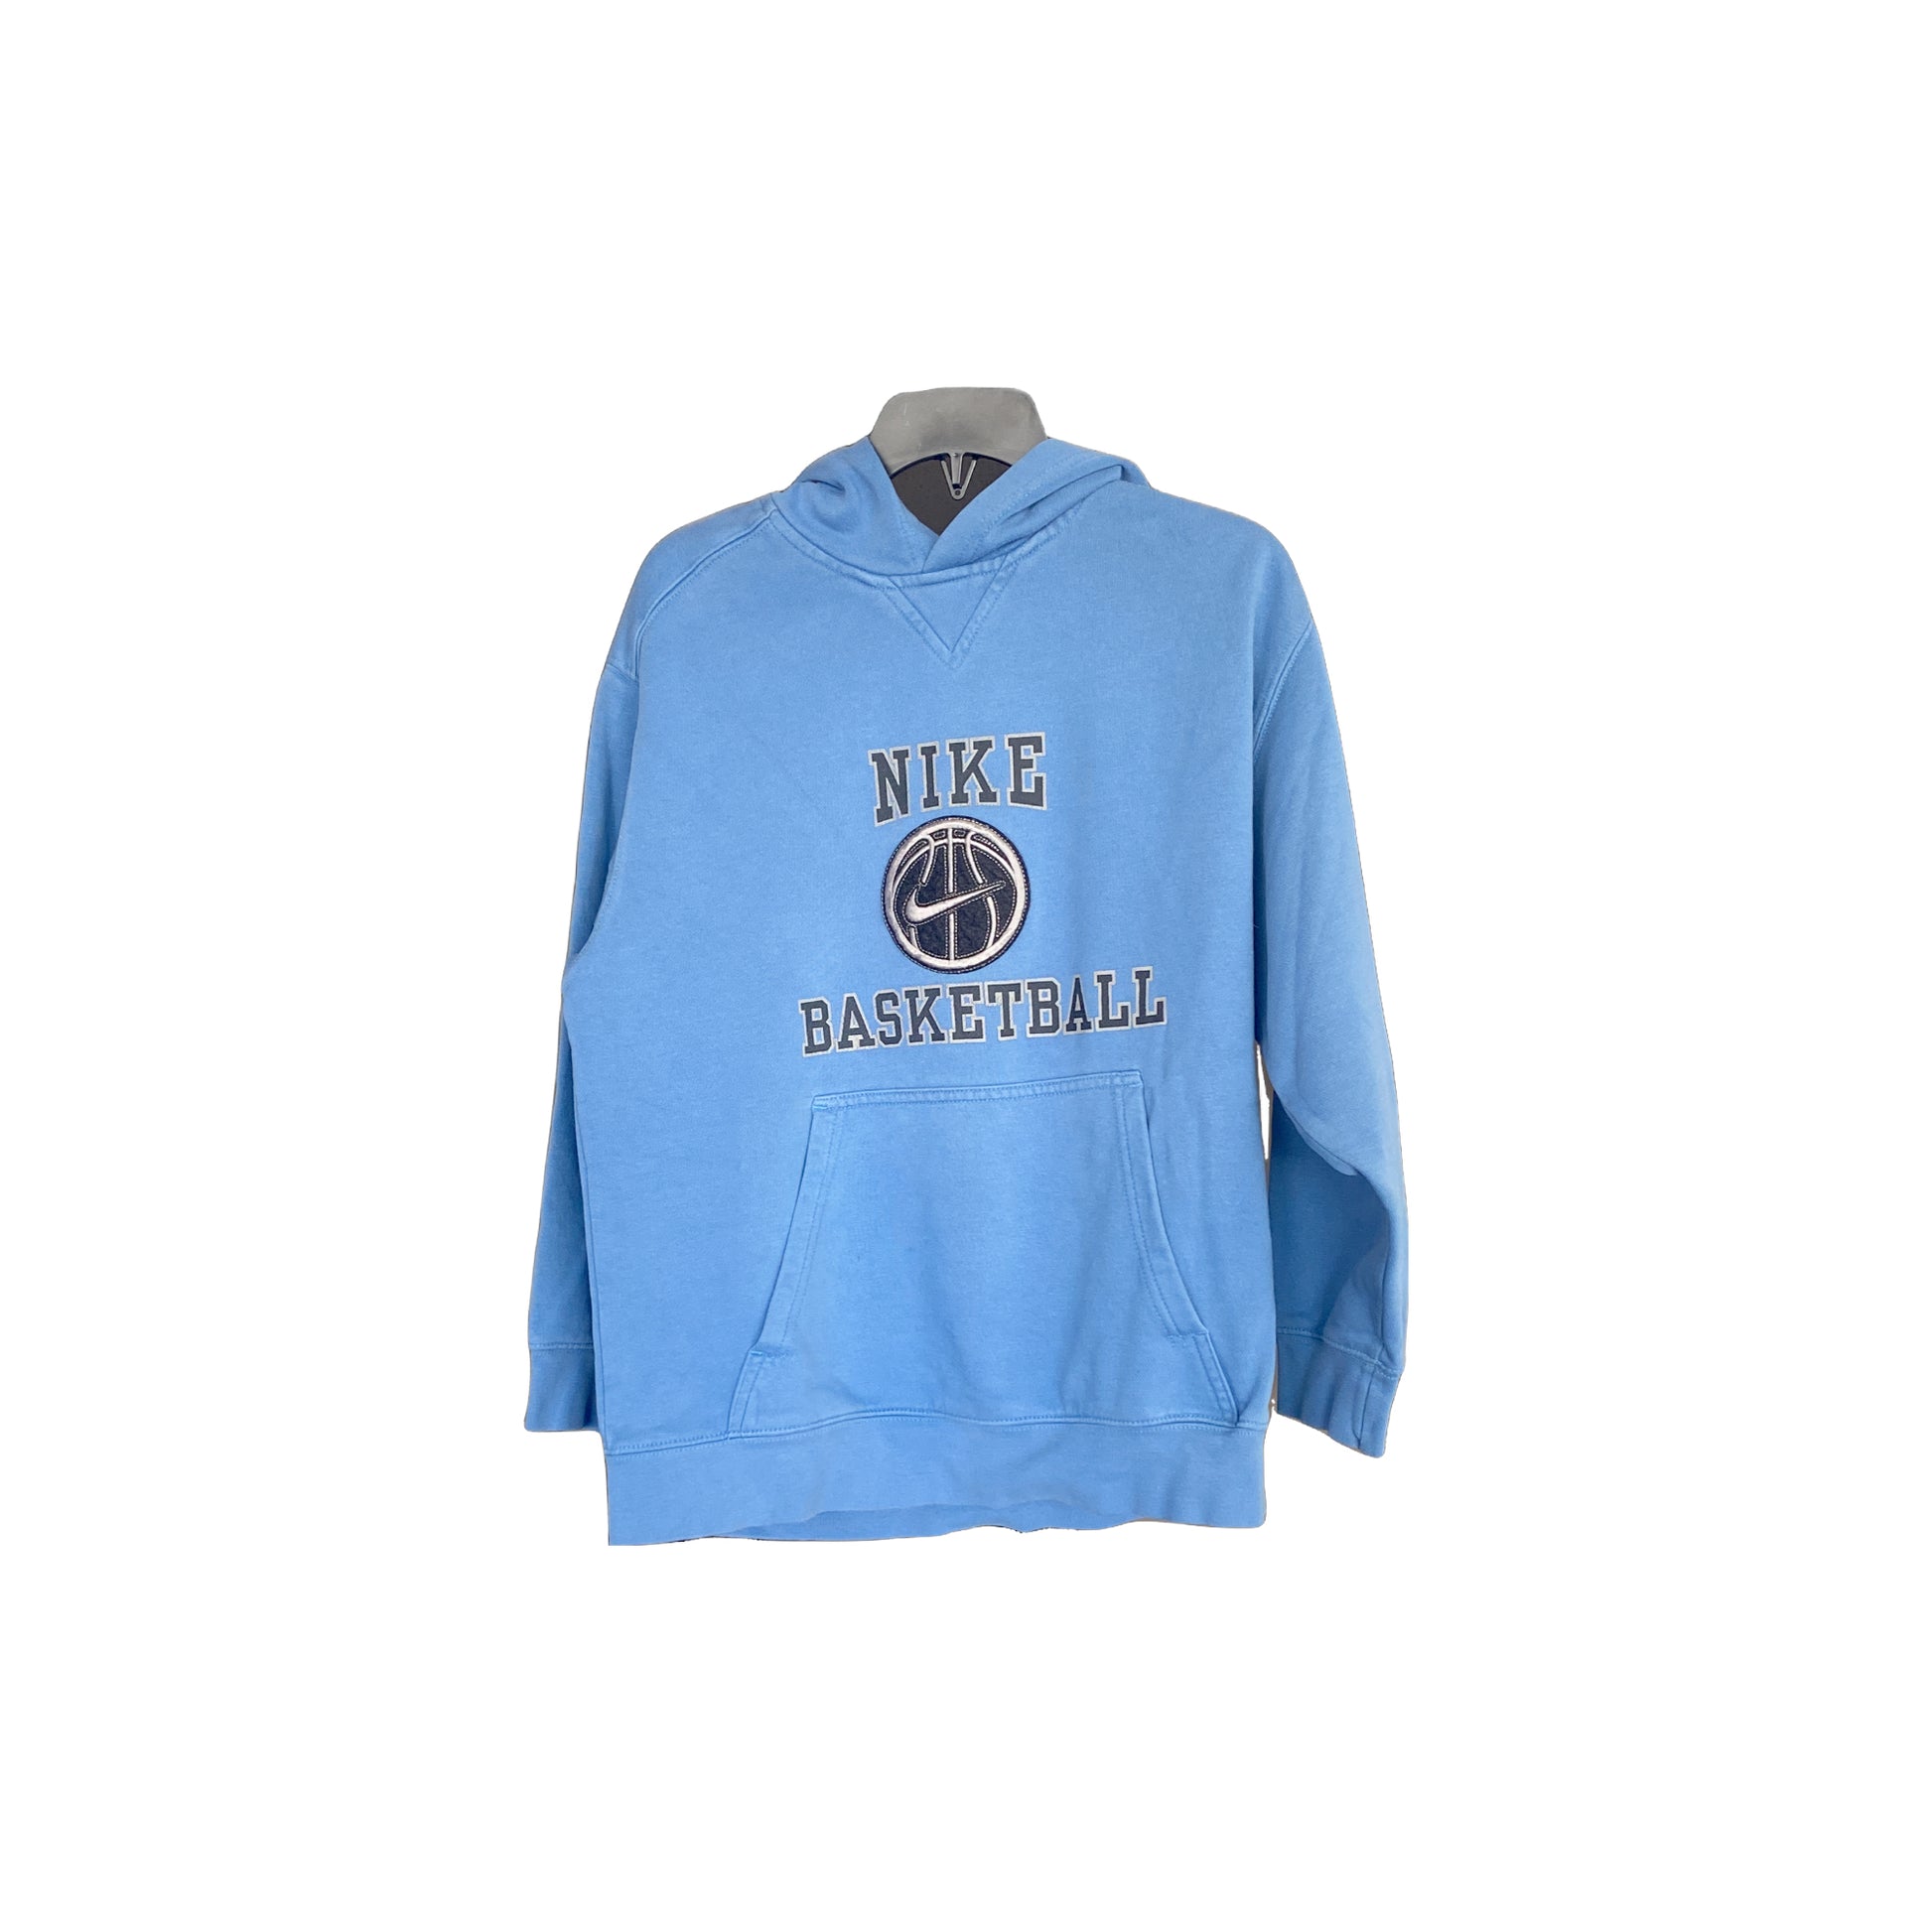 Nike Basketball Sweatshirt